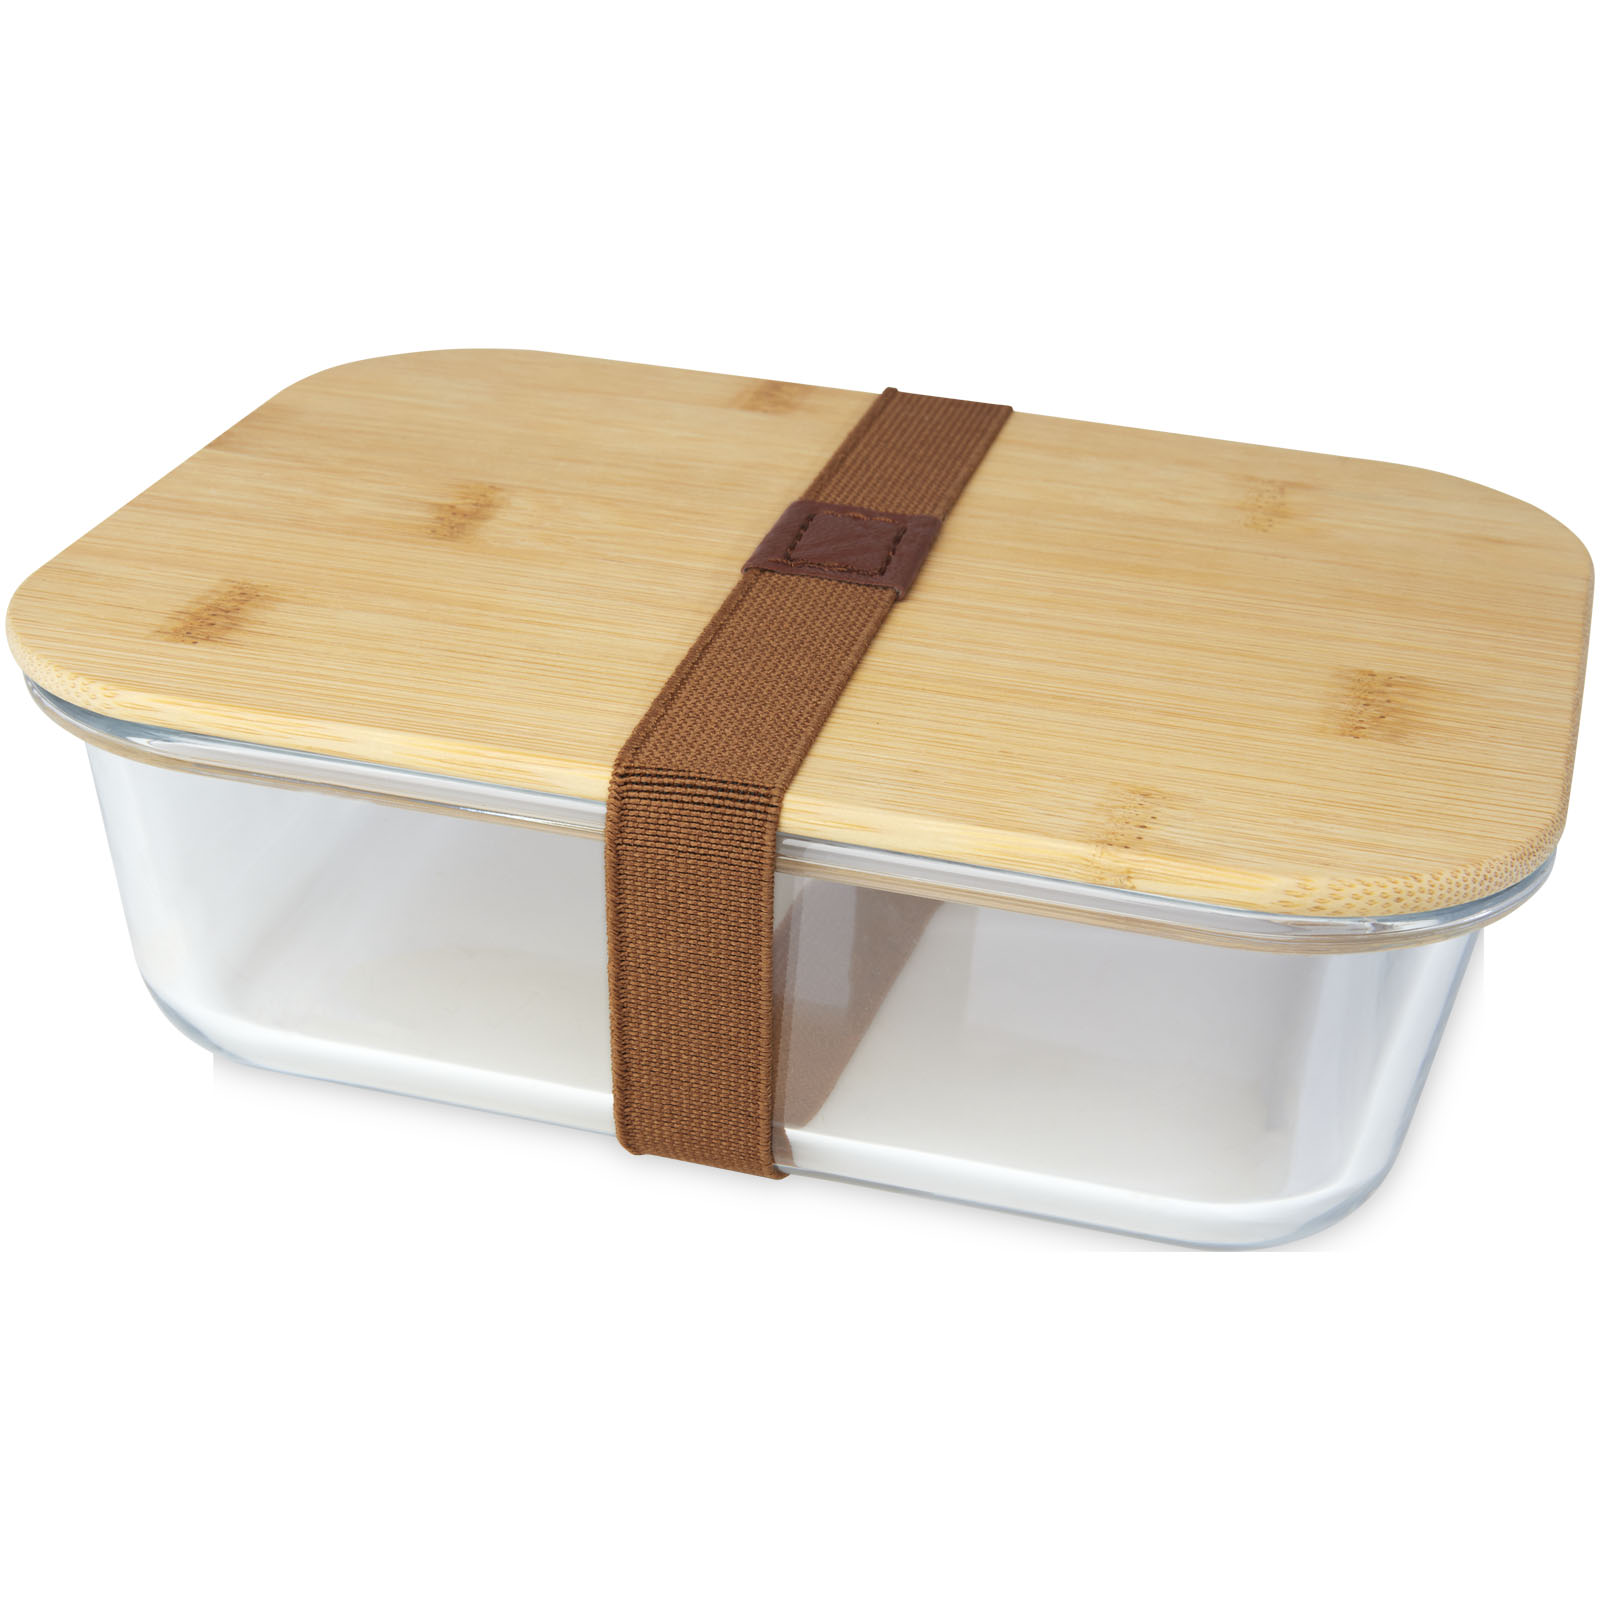 Skleněná obědová krabička LEEK s bambusovým víčkem, 1 l - natural / transparent clear